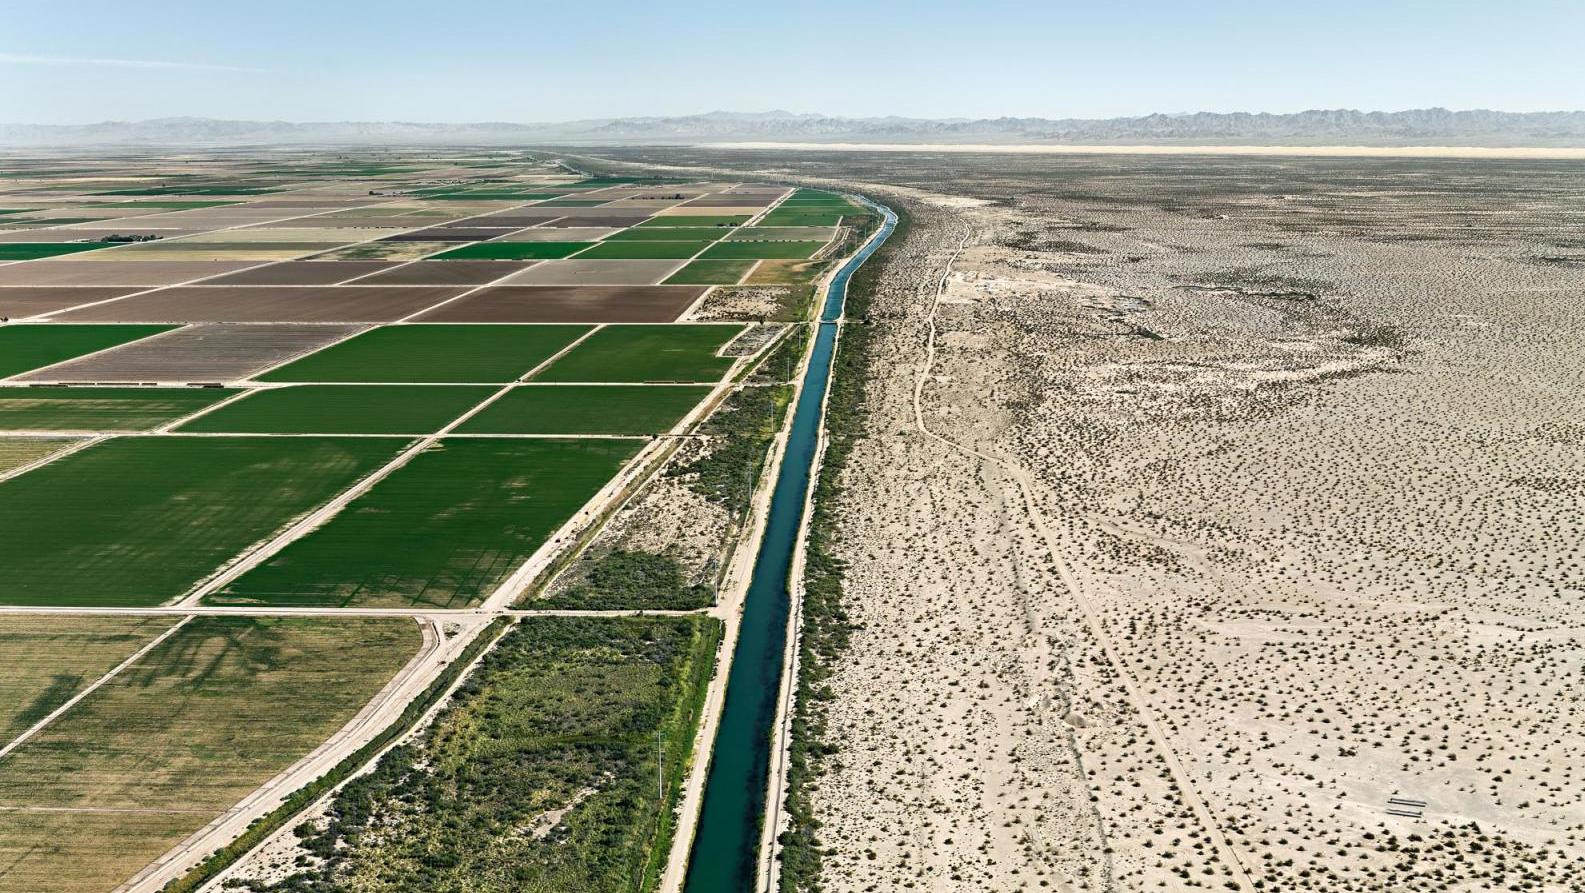 Edward Burtynsky (né en 1955), Irrigation par sillons, vallée impériale, Californie... Edward Burtynsky. Eaux troublées